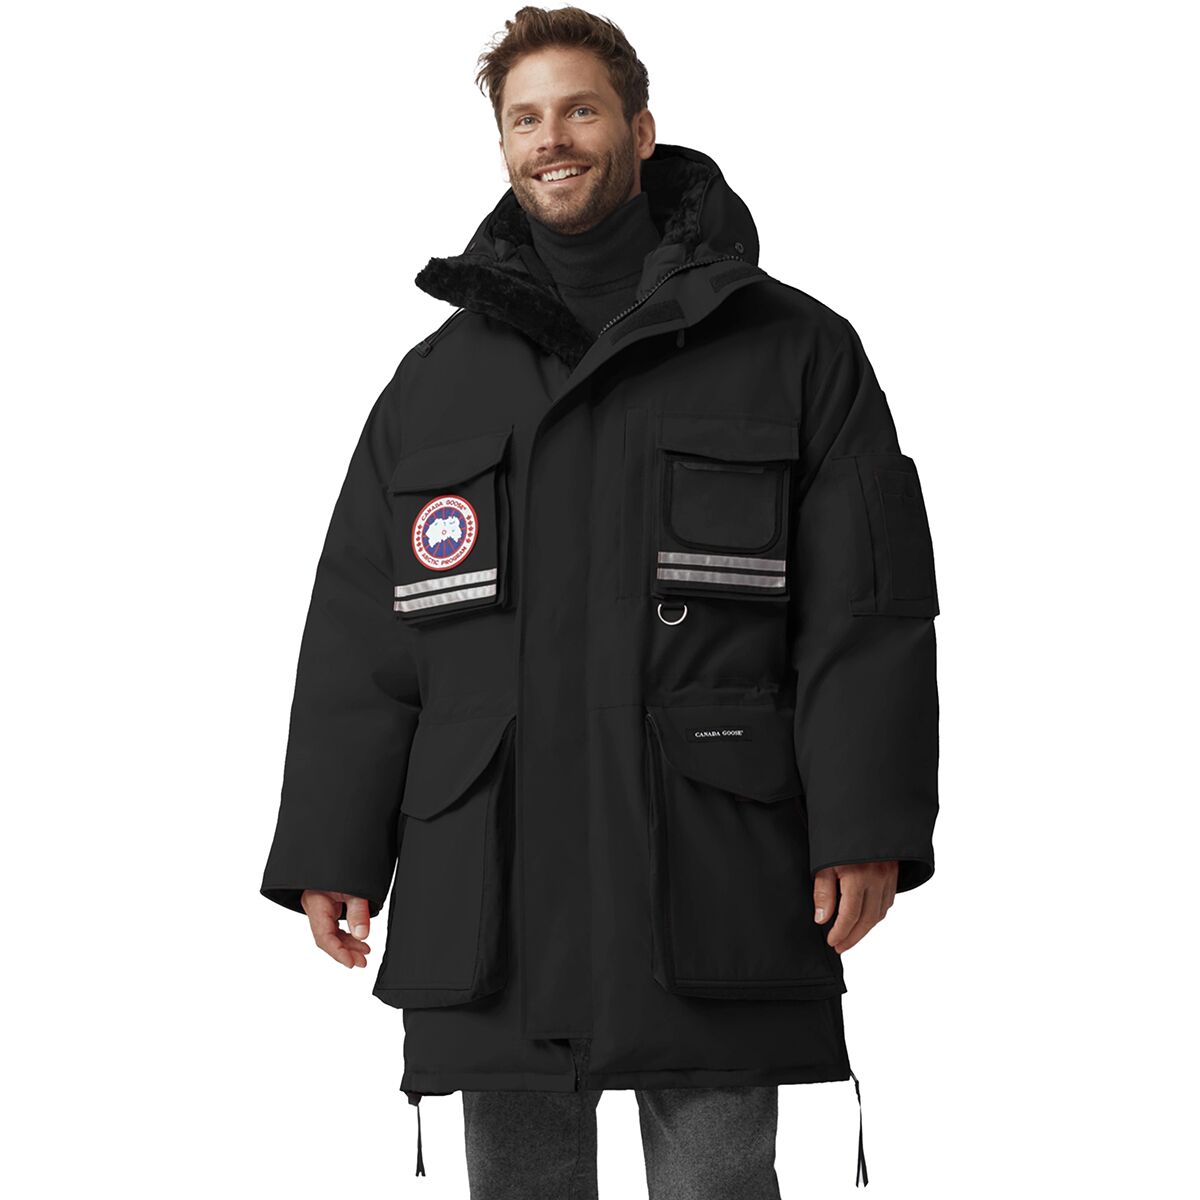 Canada Goose jackets replica fake - Canada Goose Snow Mantra Parka Reviews - Trailspace.com